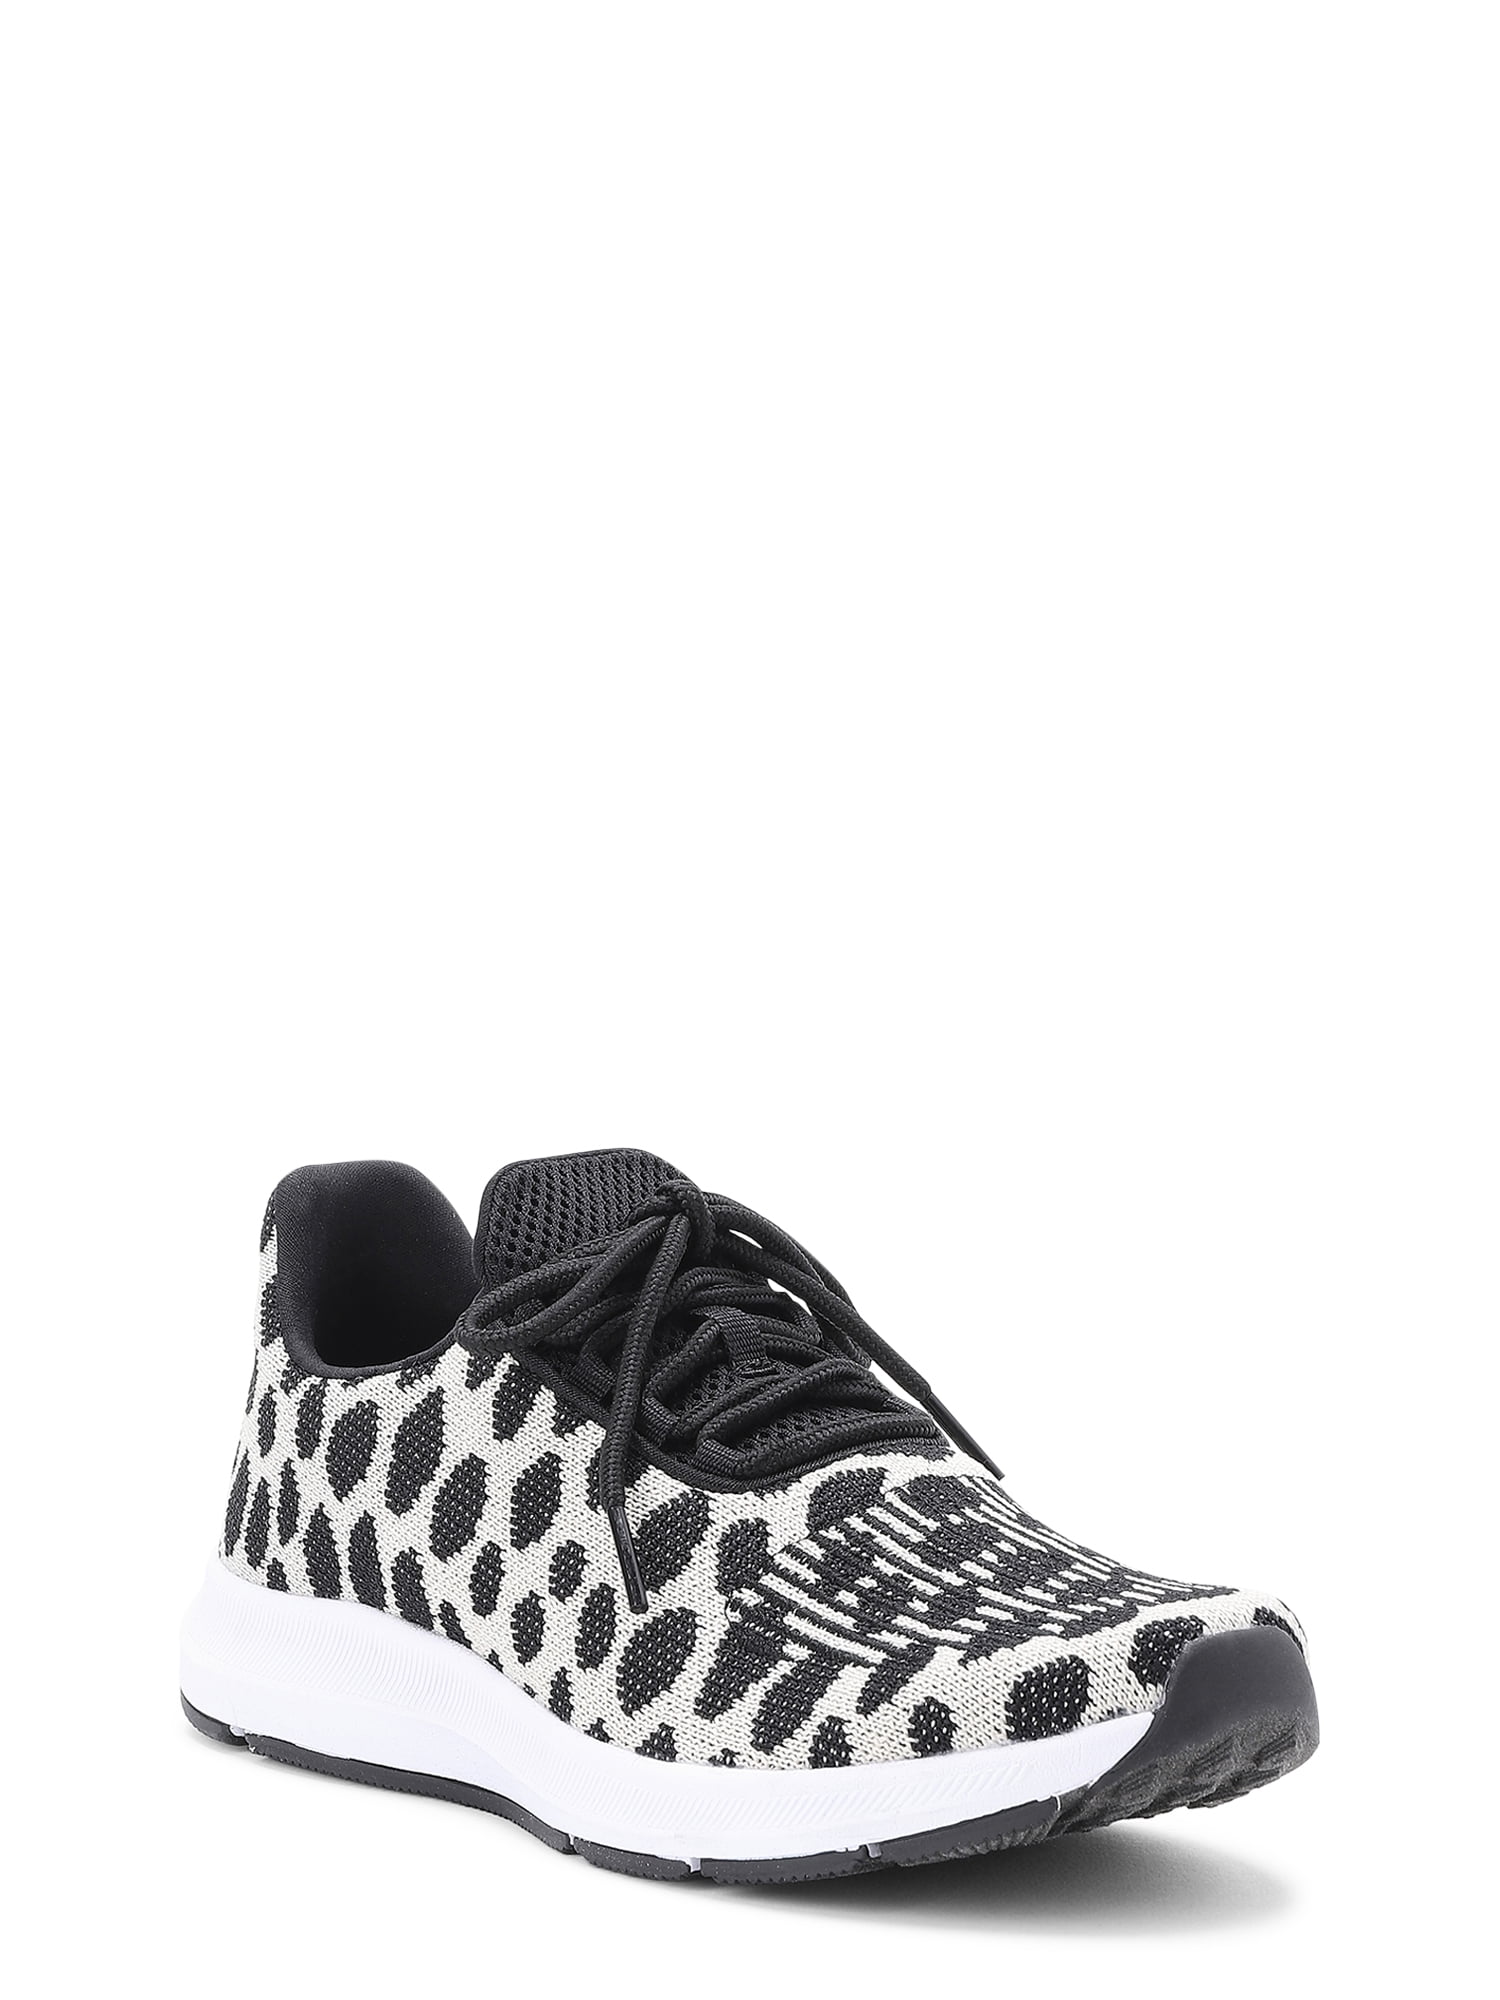 tennis leopard shoes